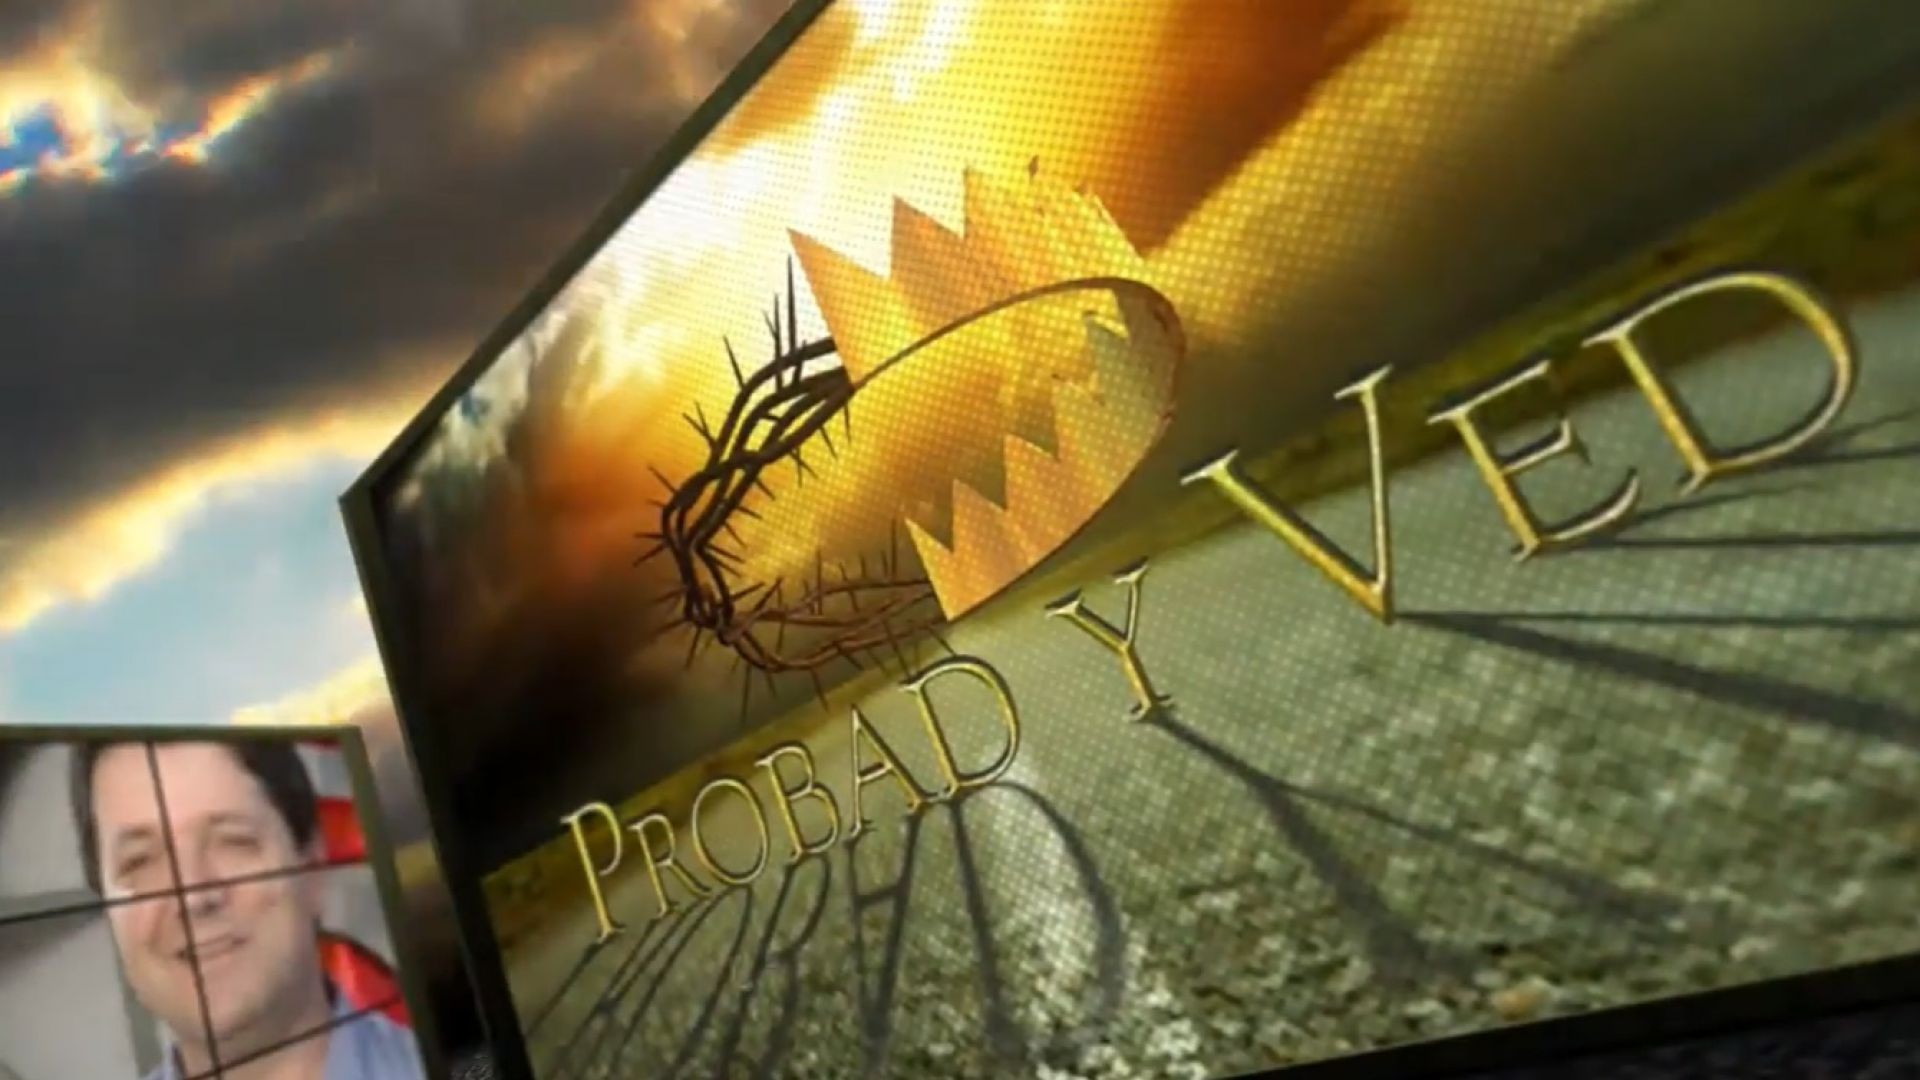 ⁣Probad y Ved 2012 - Dios obra maravillas